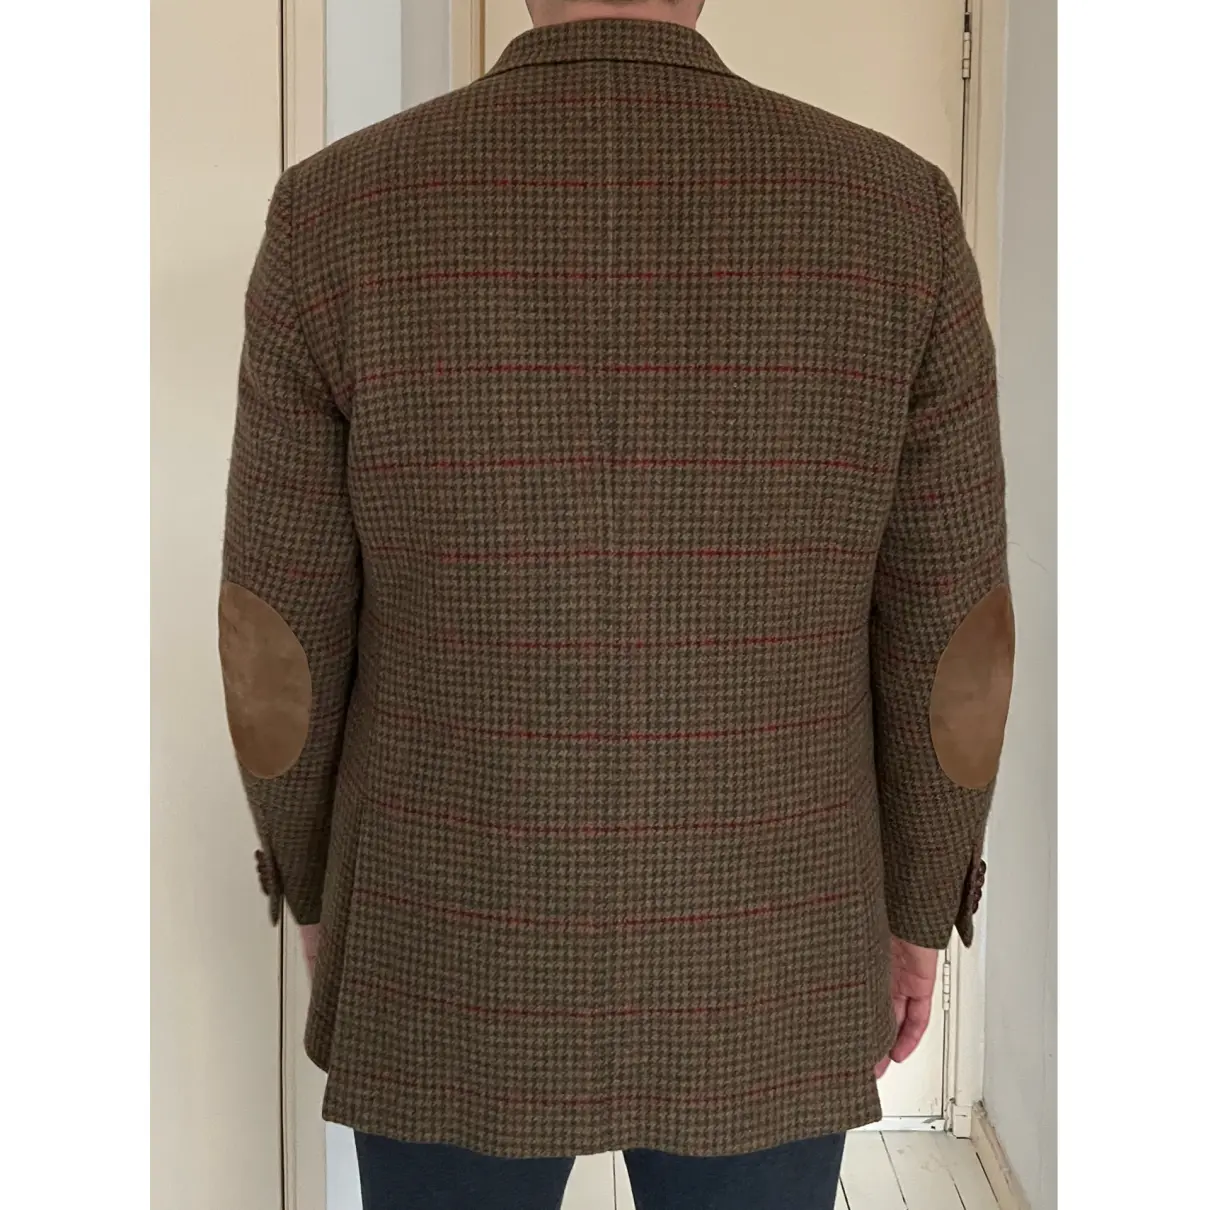 Buy Polo Ralph Lauren Wool jacket online